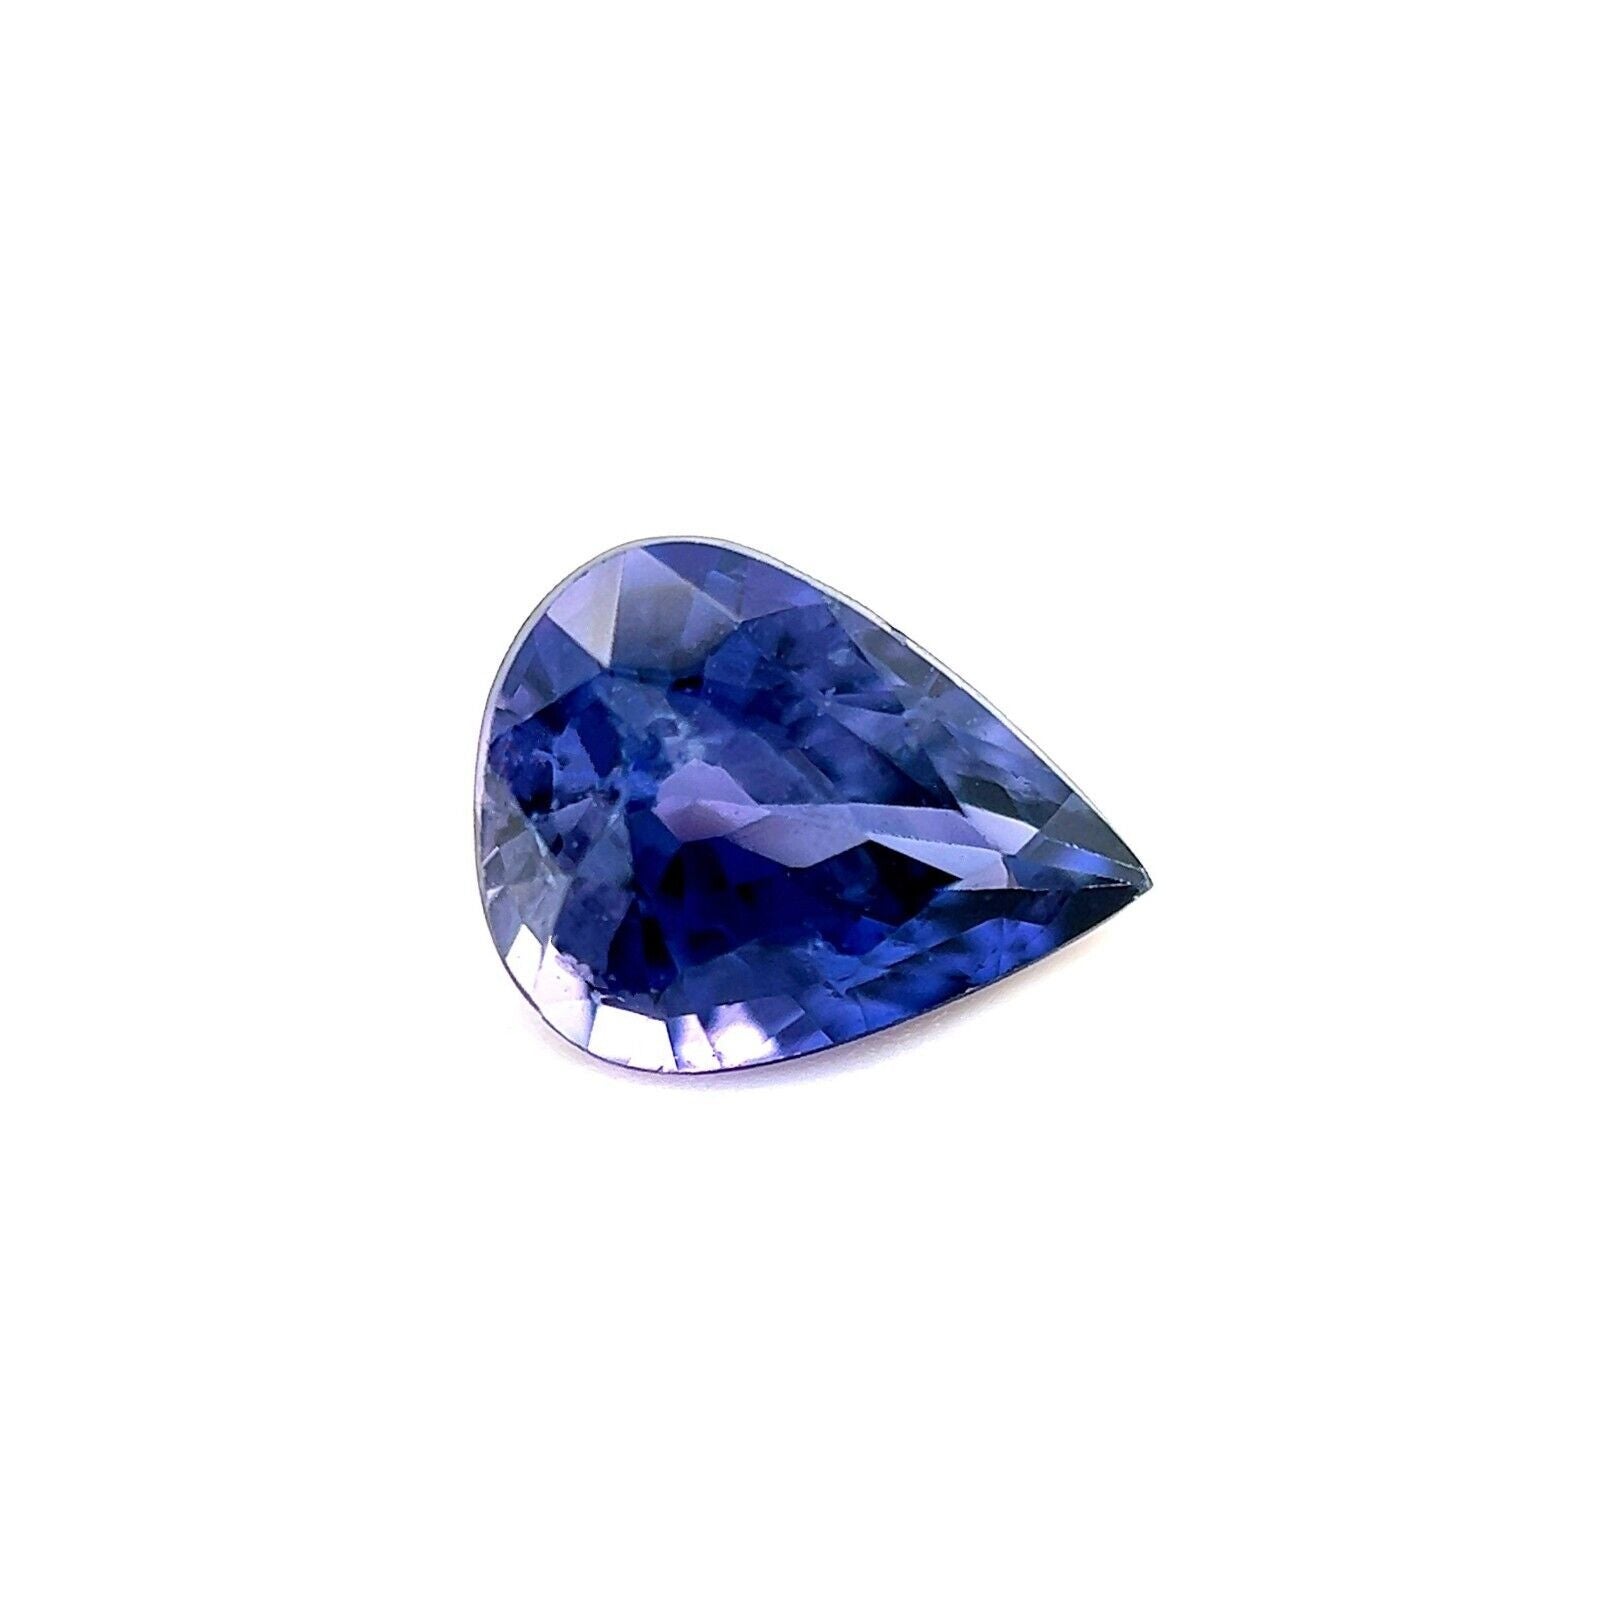 Saphir bleu vif et violet 0,84 carat, taille poire en forme de goutte d'eau, pierre précieuse rare, taille libre 6,7 x 5,2 mm